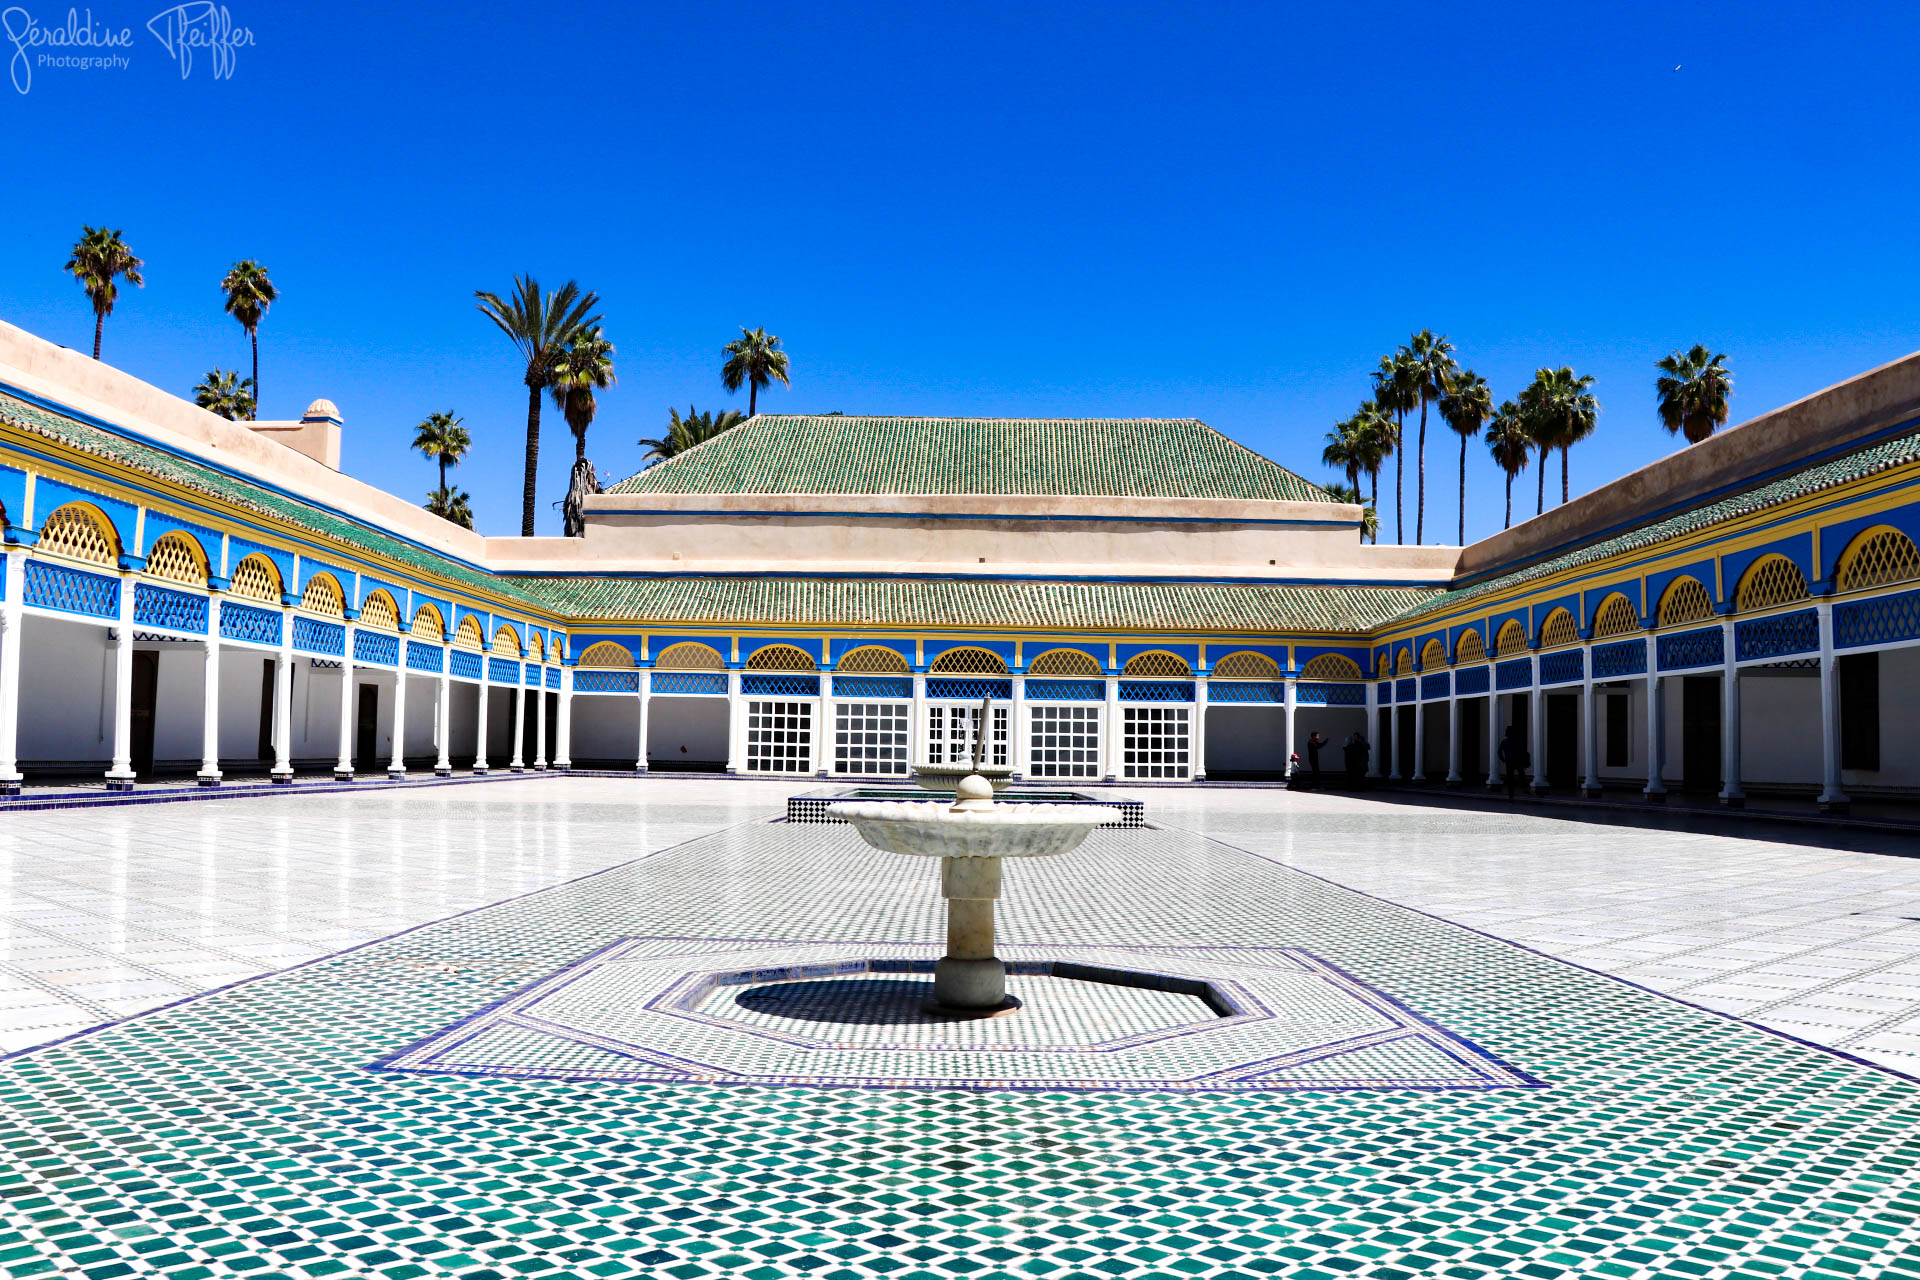  El Bahia Palace in Marrakech